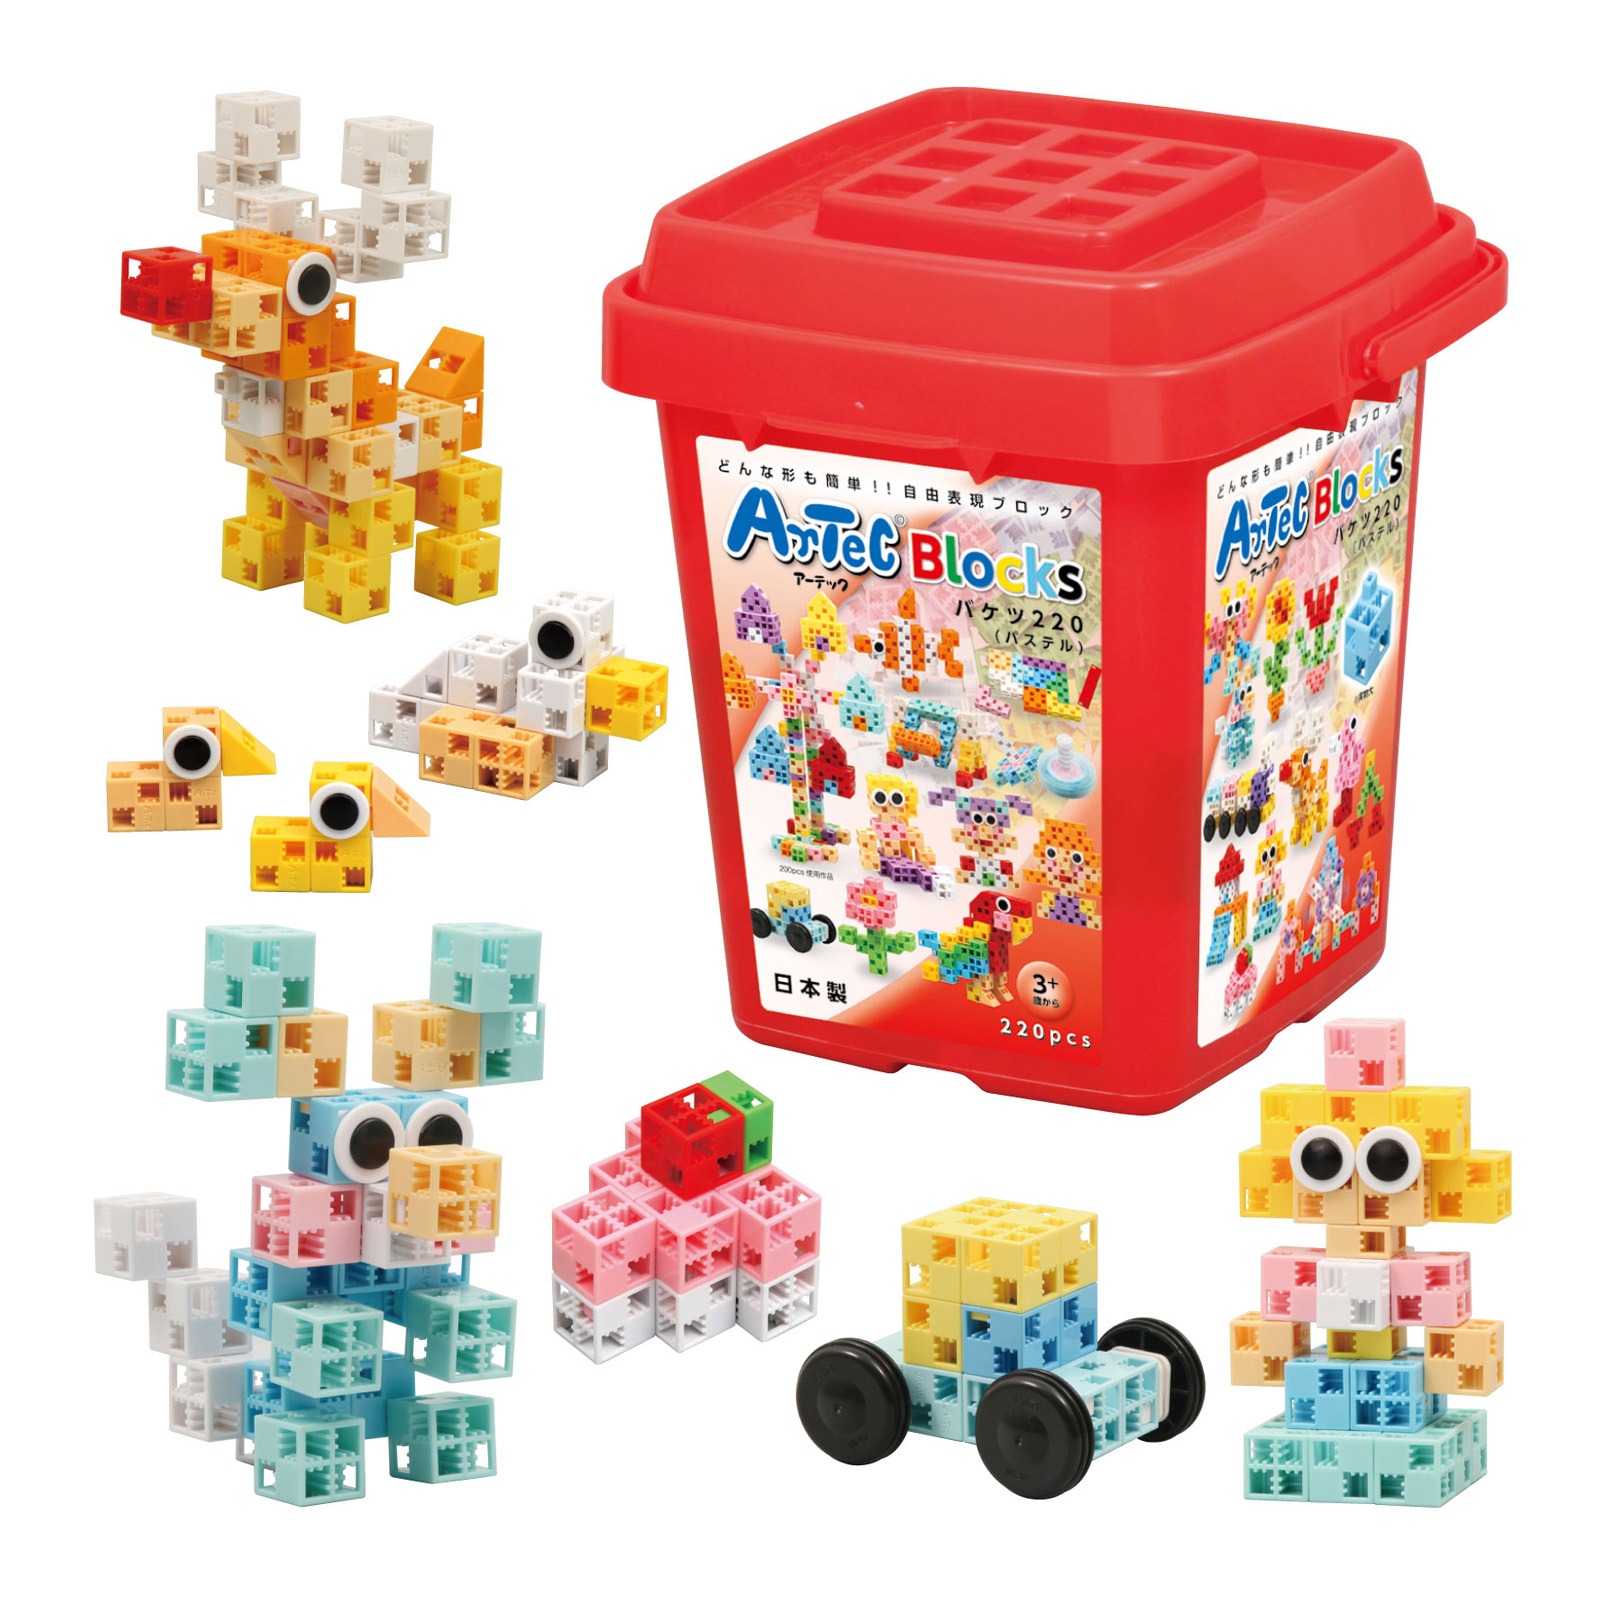 ブロック おもちゃ アーテックブロック ドリームセットDX 1154pcs Artecブロック 日本製 ブロック 日本製 ゲーム 玩具 知育玩具 3歳  4歳 5歳 6歳 教育 レゴ・レゴブロックのように自由に遊べます:ルーペスタジオ